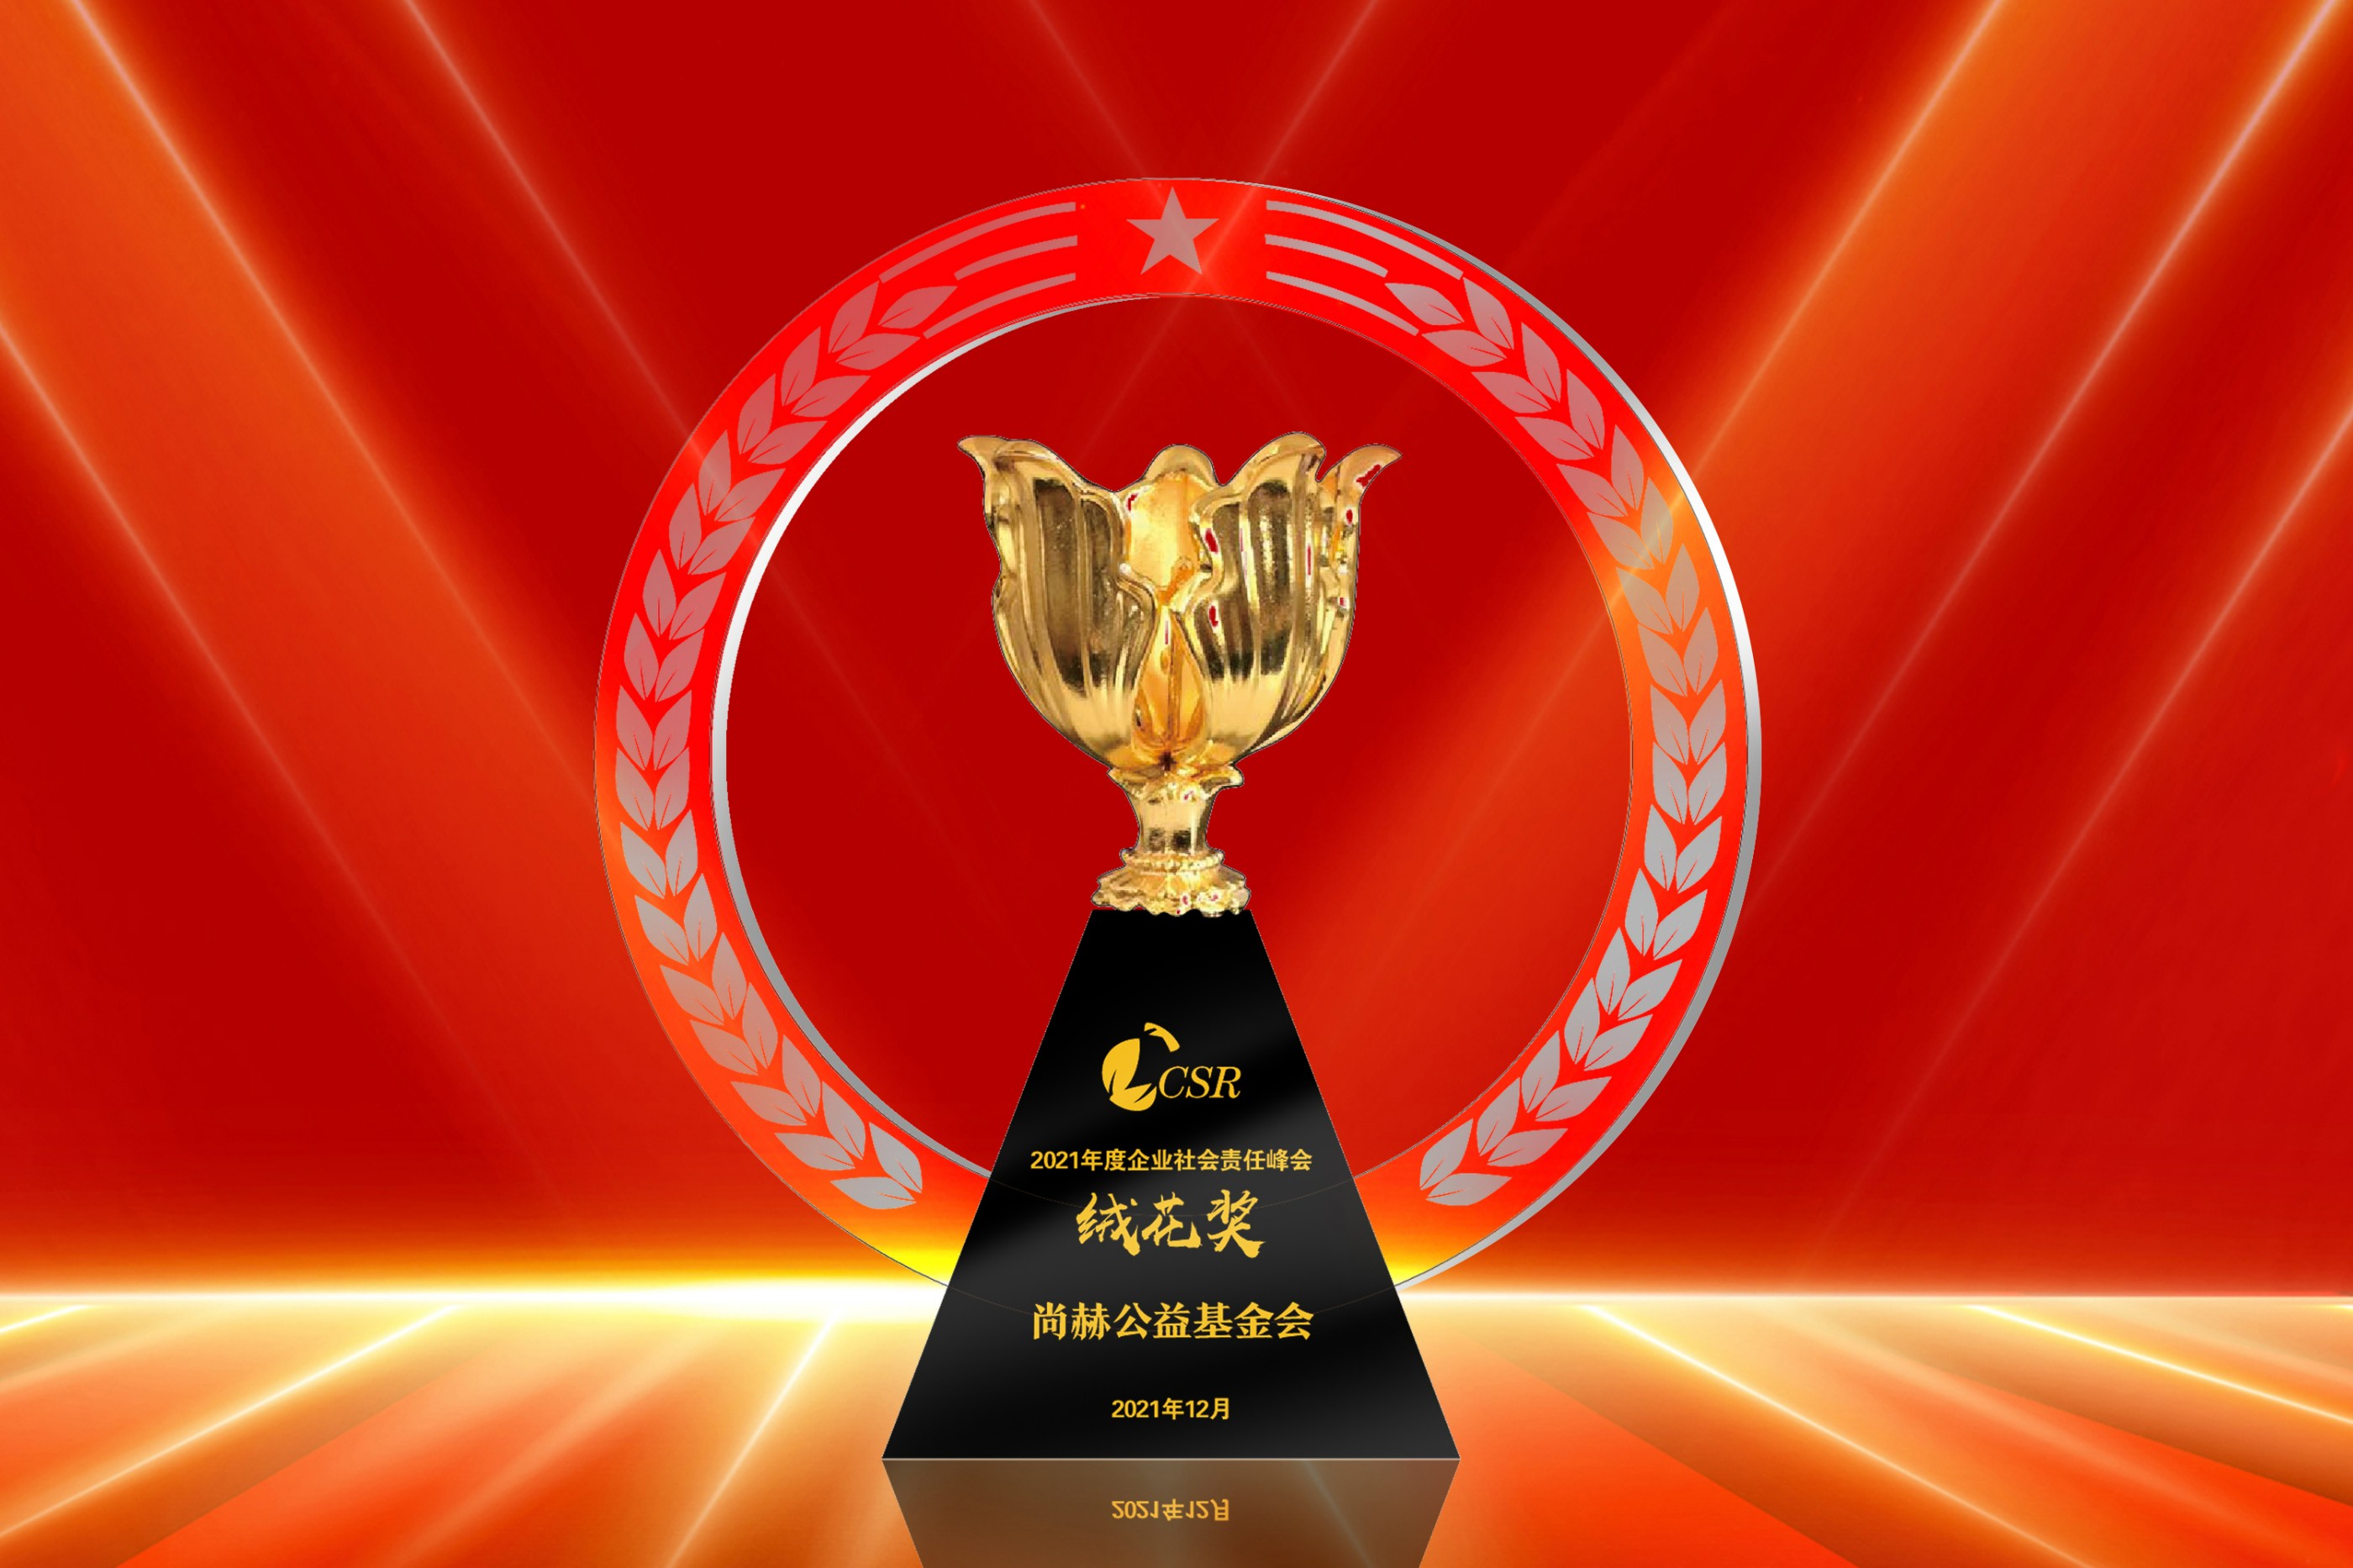 2021年12月-皇家体育(中国)有限责任公司公益基金会荣获“2021年度企业社会责任绒花奖”